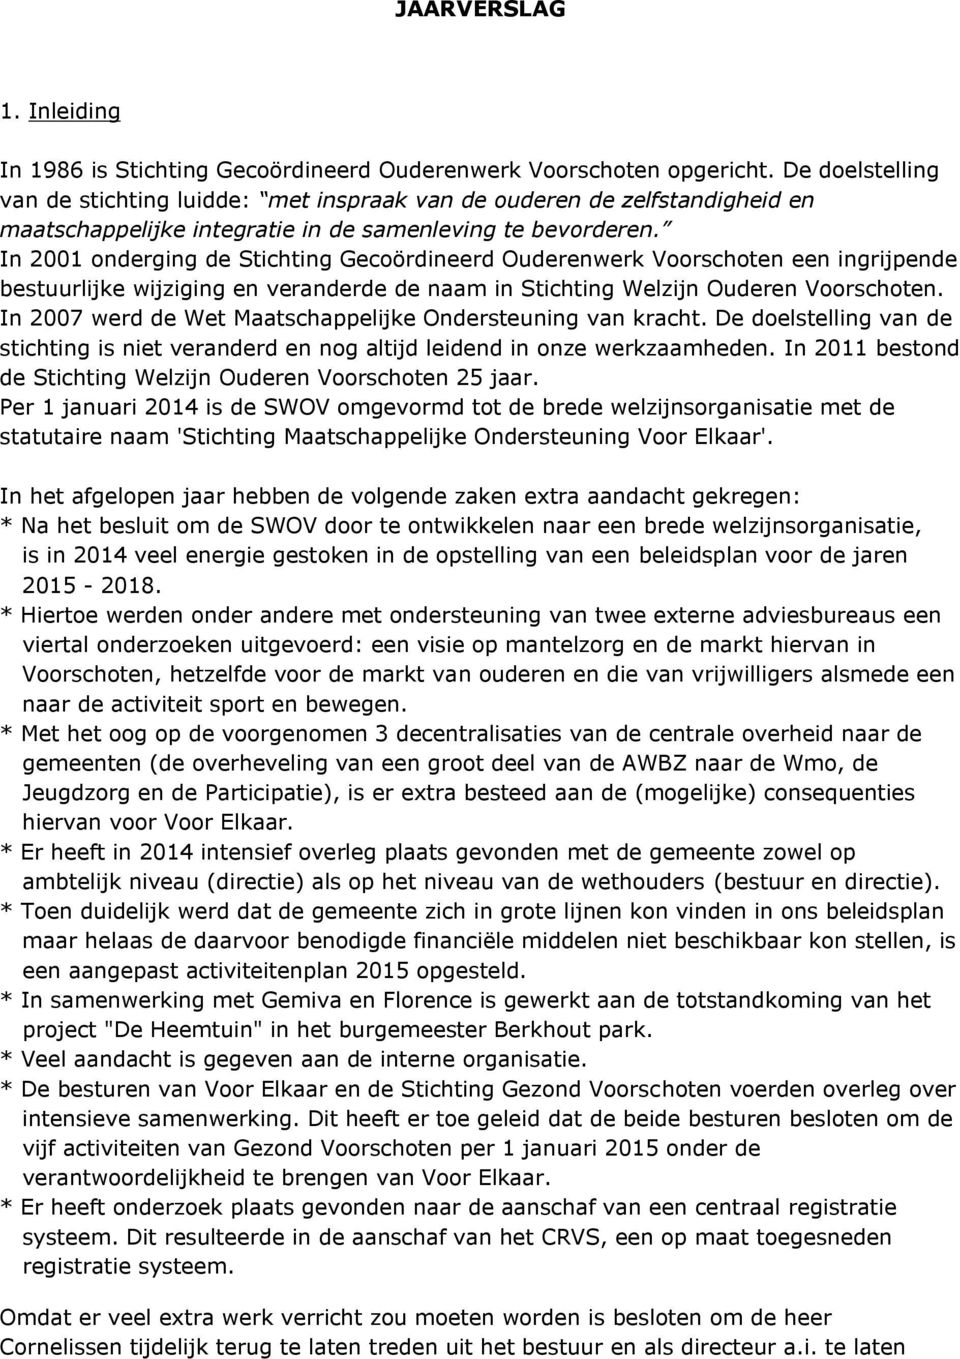 In 2001 onderging de Stichting Gecoördineerd Ouderenwerk Voorschoten een ingrijpende bestuurlijke wijziging en veranderde de naam in Stichting Welzijn Ouderen Voorschoten.